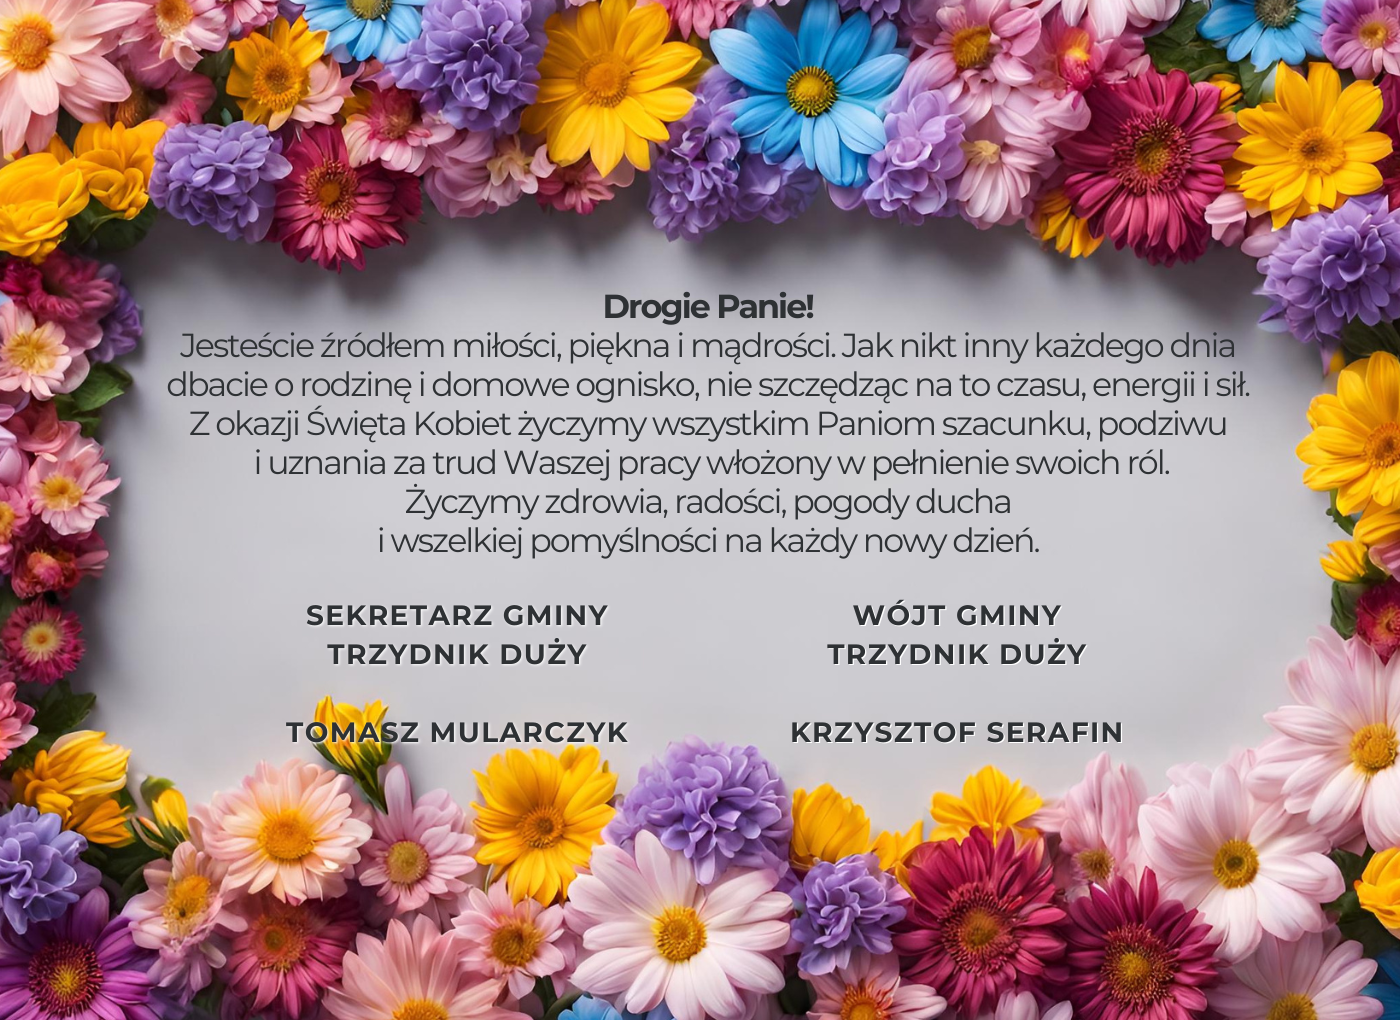 Zdjęcie różnokolorowych kwiatów ułożonych wokół białej kartki z polskim tekstem, który wyraża wdzięczność i uznanie dla matek.